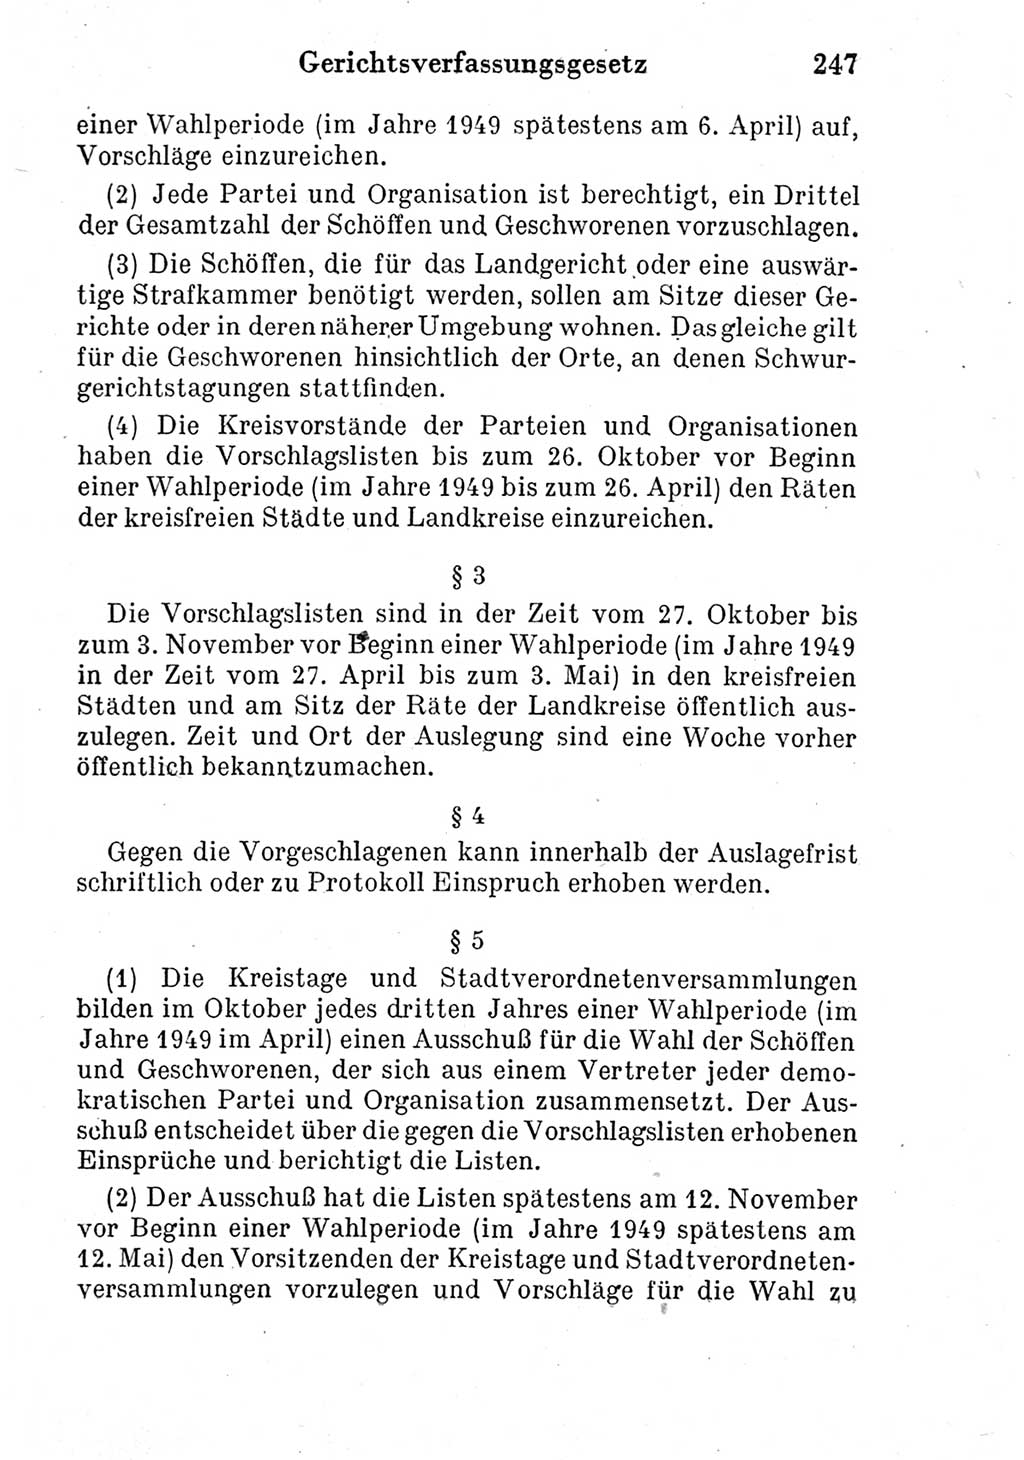 Strafprozeßordnung (StPO), Gerichtsverfassungsgesetz (GVG) und zahlreiche Nebengesetze der Deutschen Demokratischen Republik (DDR) 1950, Seite 247 (StPO GVG Ges. DDR 1950, S. 247)